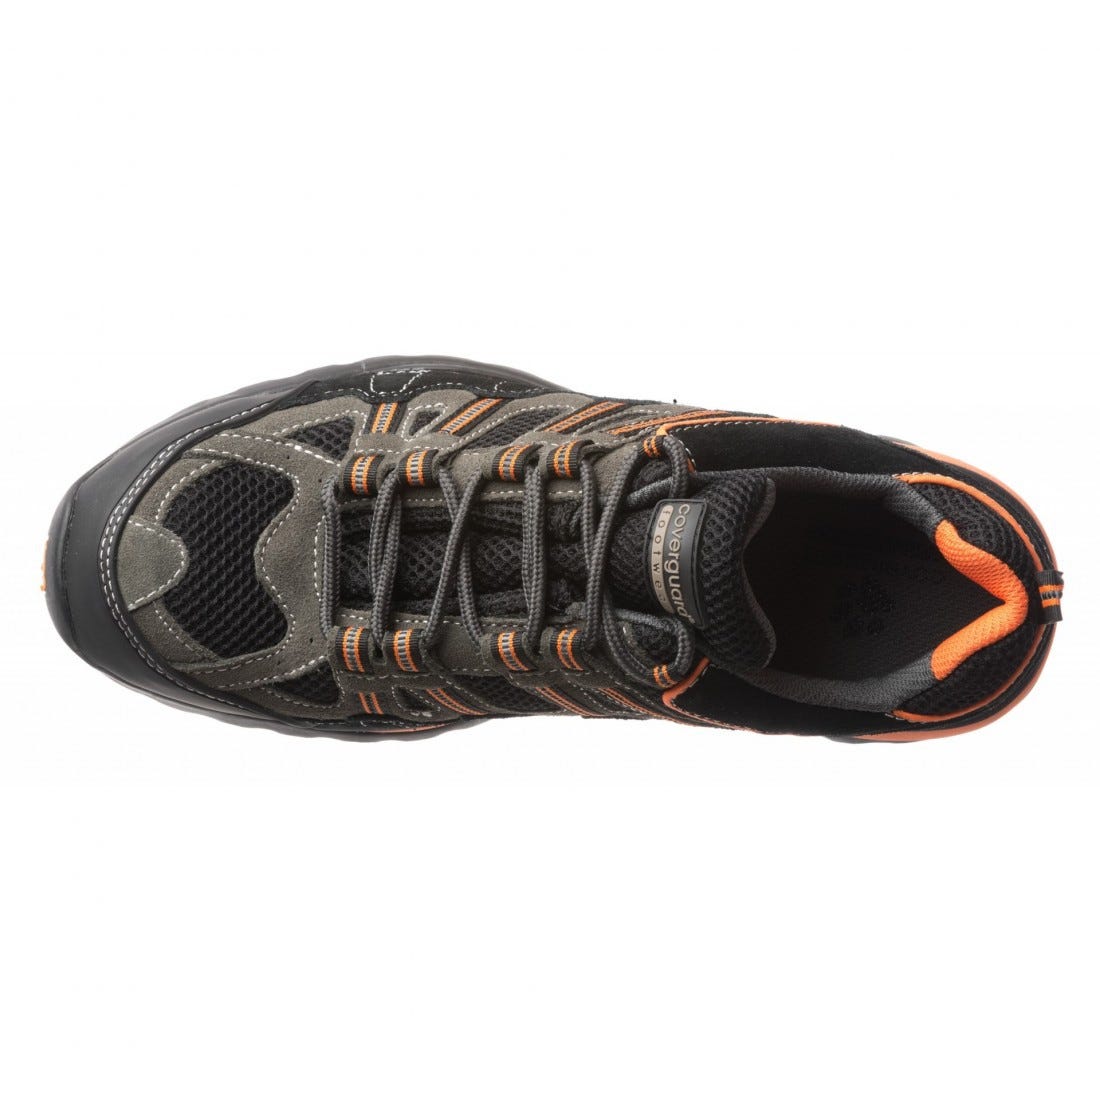 Chaussures de sécurité HELVITE S1P composite noir/orange - COVERGUARD - Taille 42 2